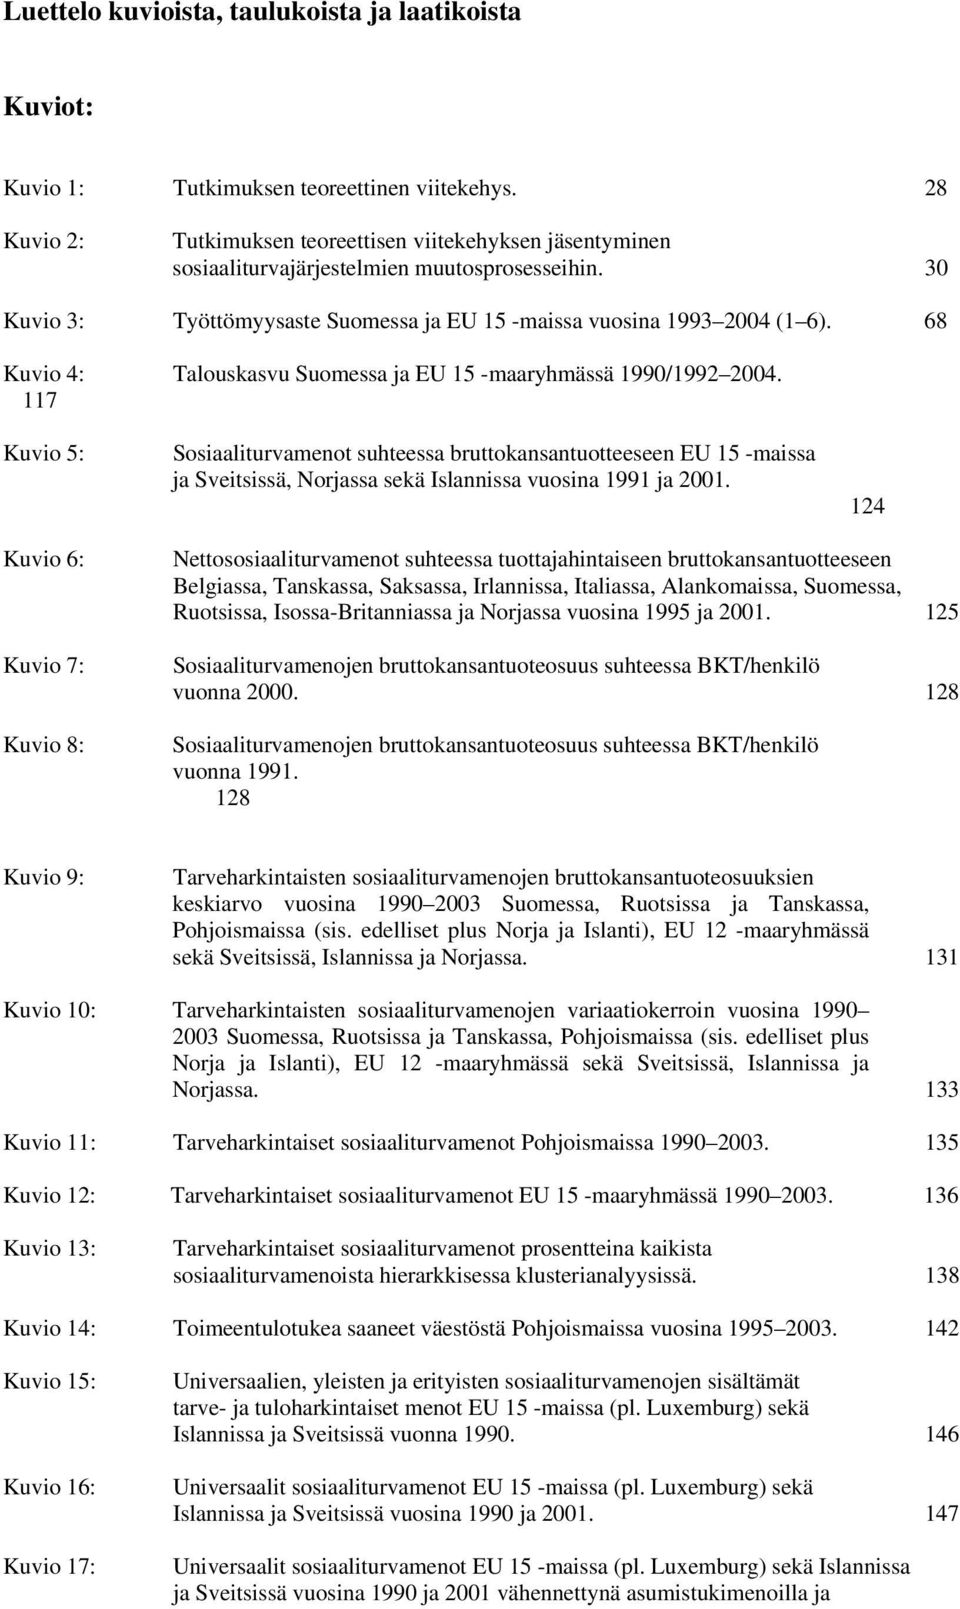 68 Kuvio 4: Talouskasvu Suomessa ja EU 15 -maaryhmässä 1990/1992 2004.